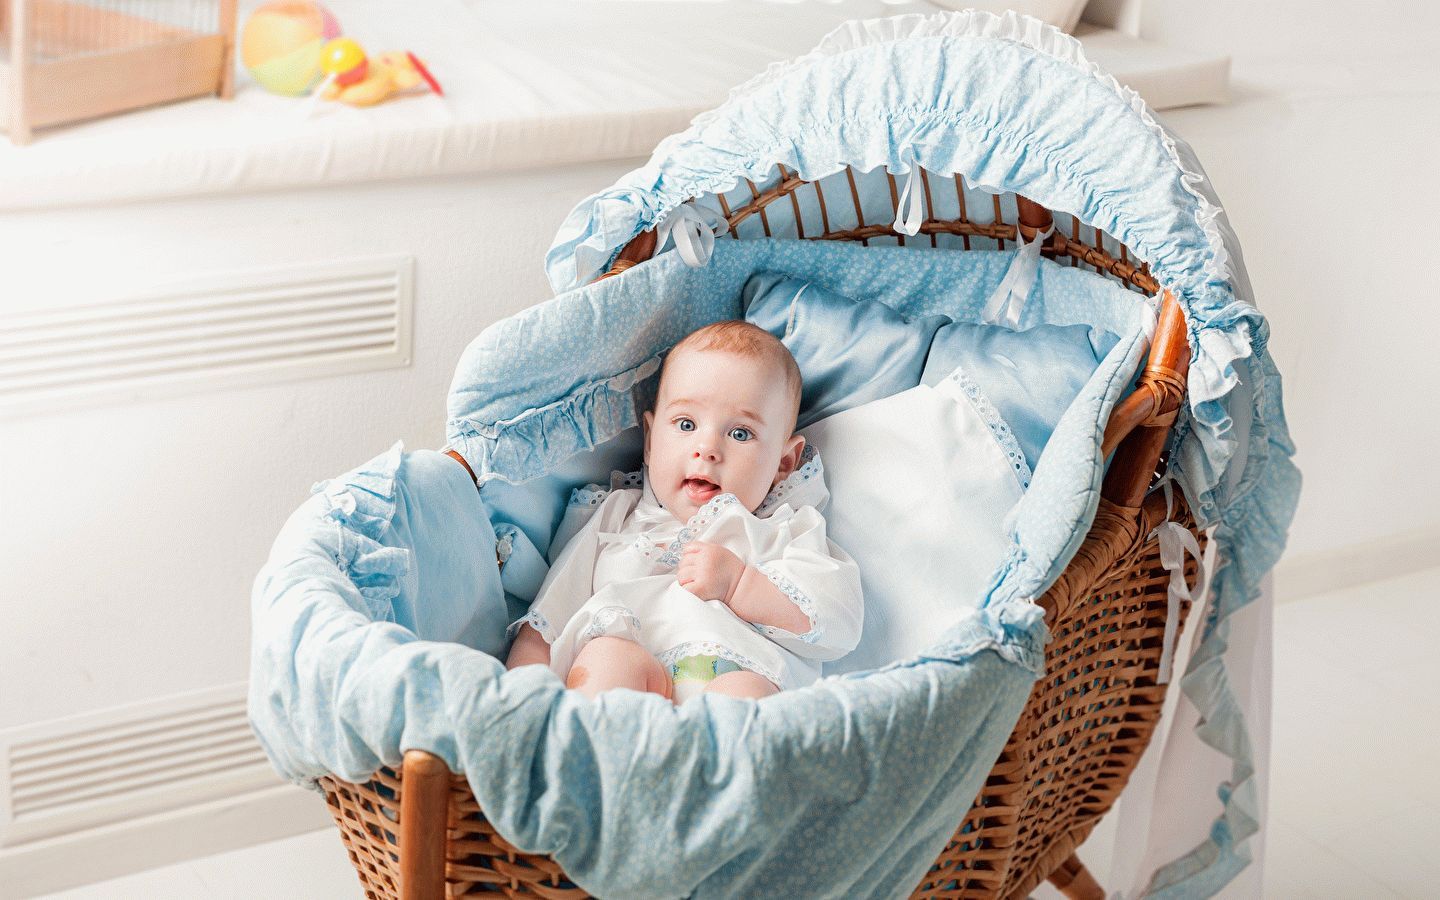 Best baby cots in 2020